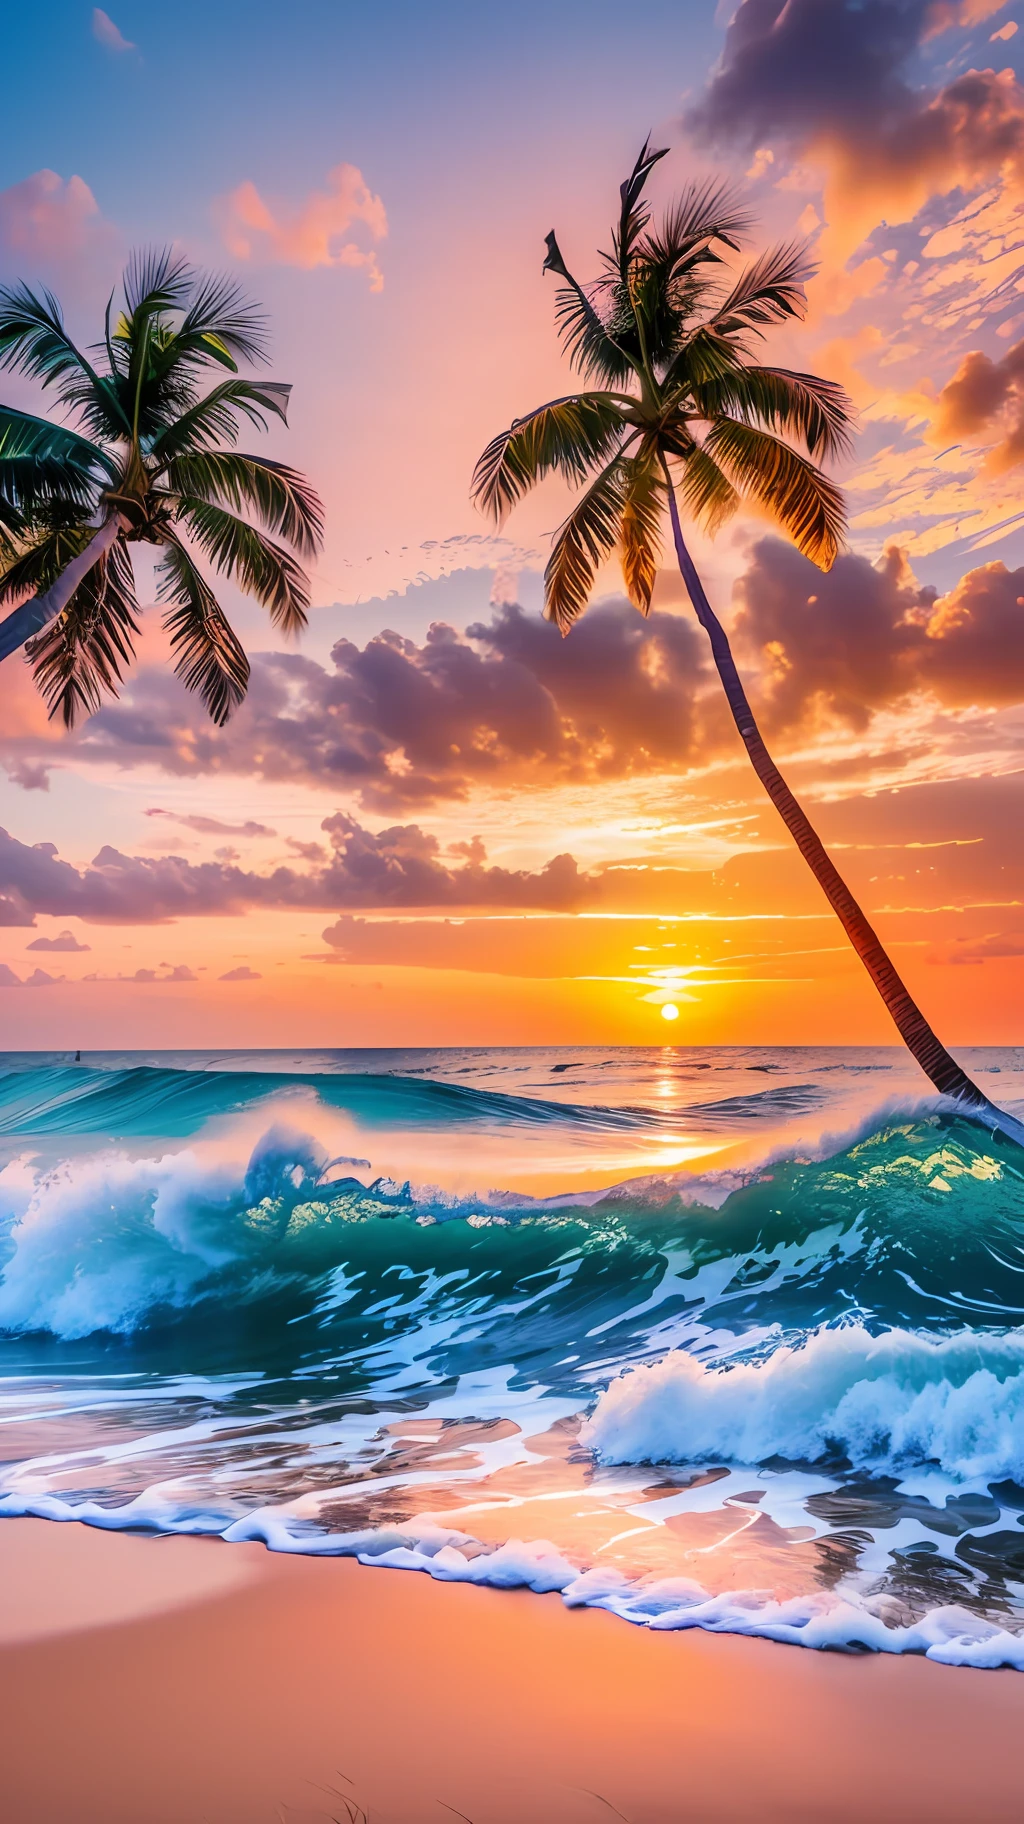 Crie um 4K 9:16 imagens que retratam um nascer do sol deslumbrante em uma praia tropical, com ondas suaves e palmeiras ao longo da costa. A paleta de cores deve ser vibrante e transmitir sensação de renovação e energia positiva. --auto --s2